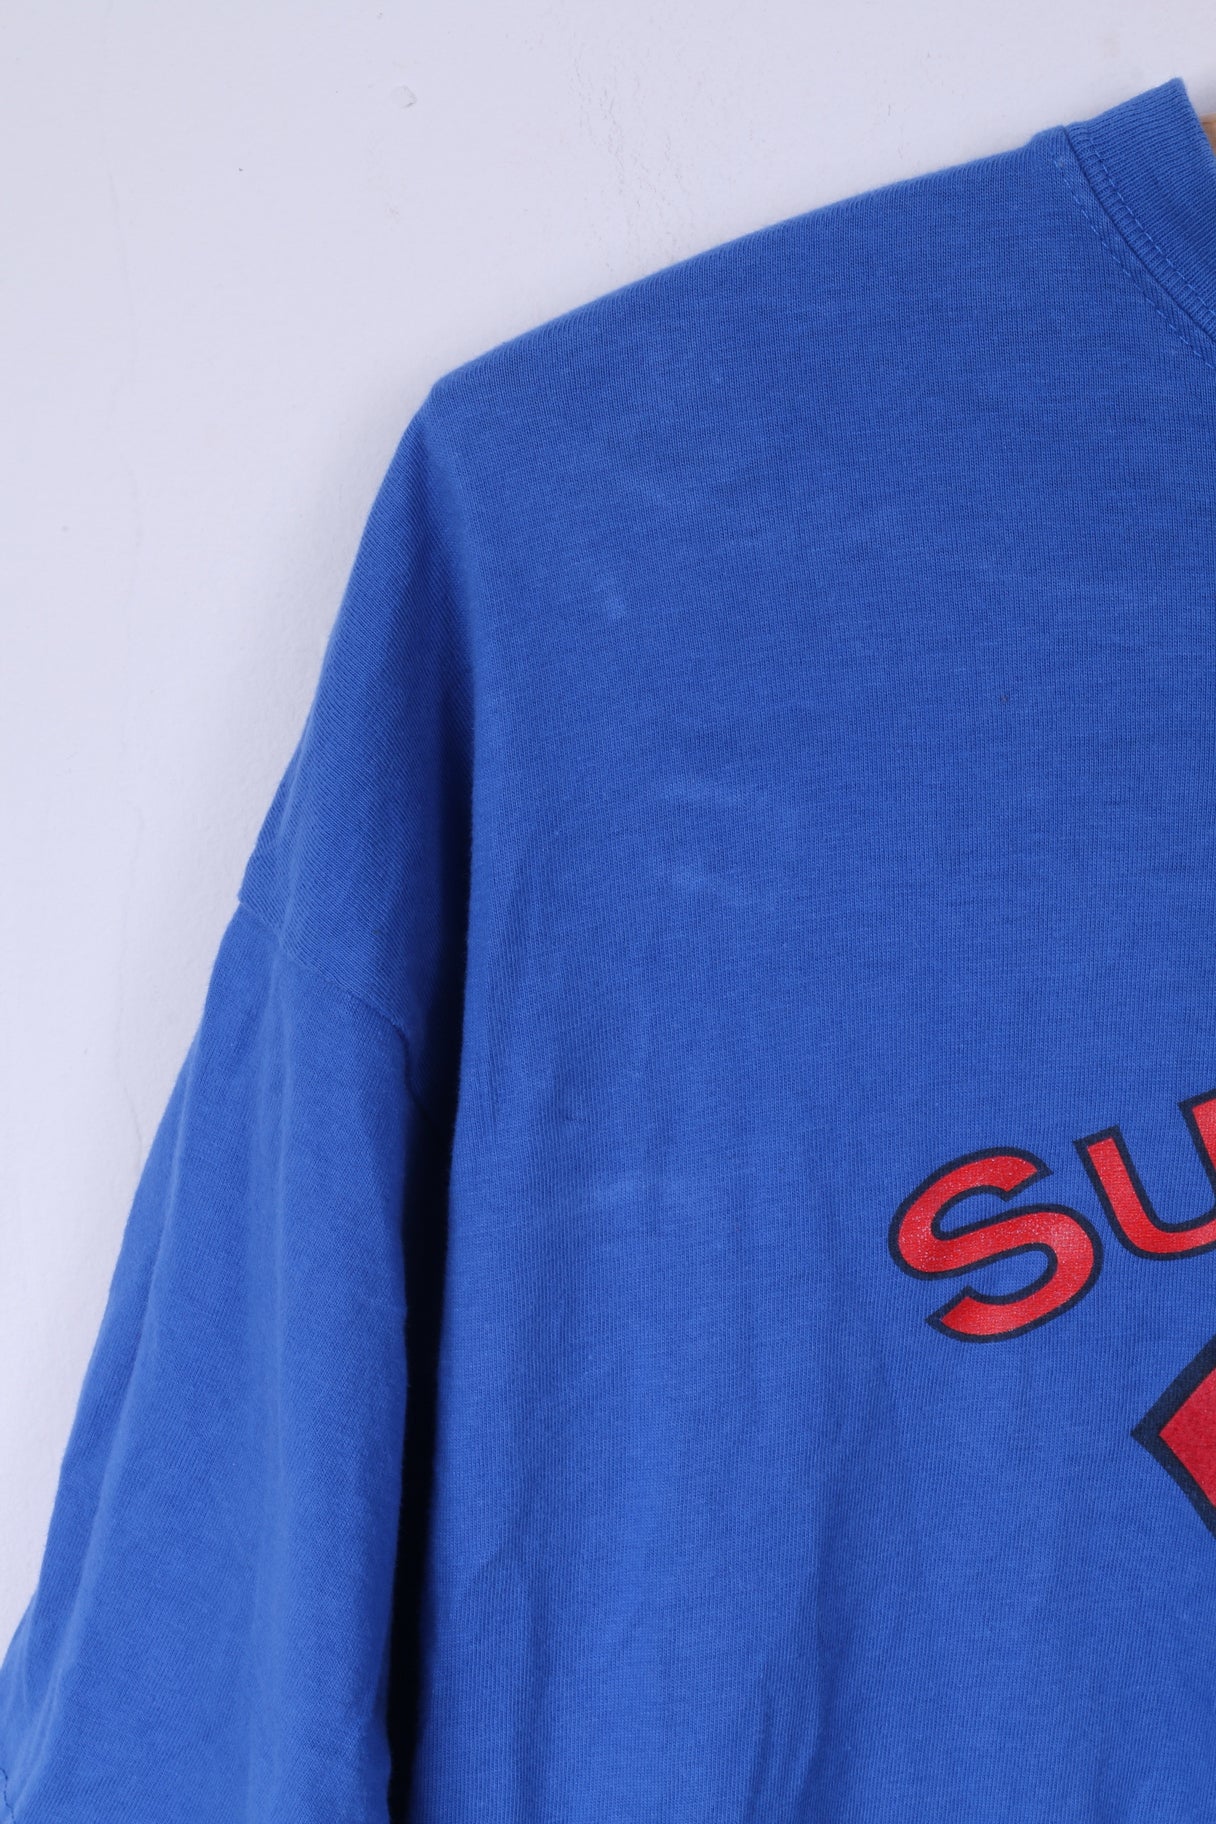 Bhs Ltd Hommes L T-Shirt Bleu Coton Graphique Superdad Super-Héros